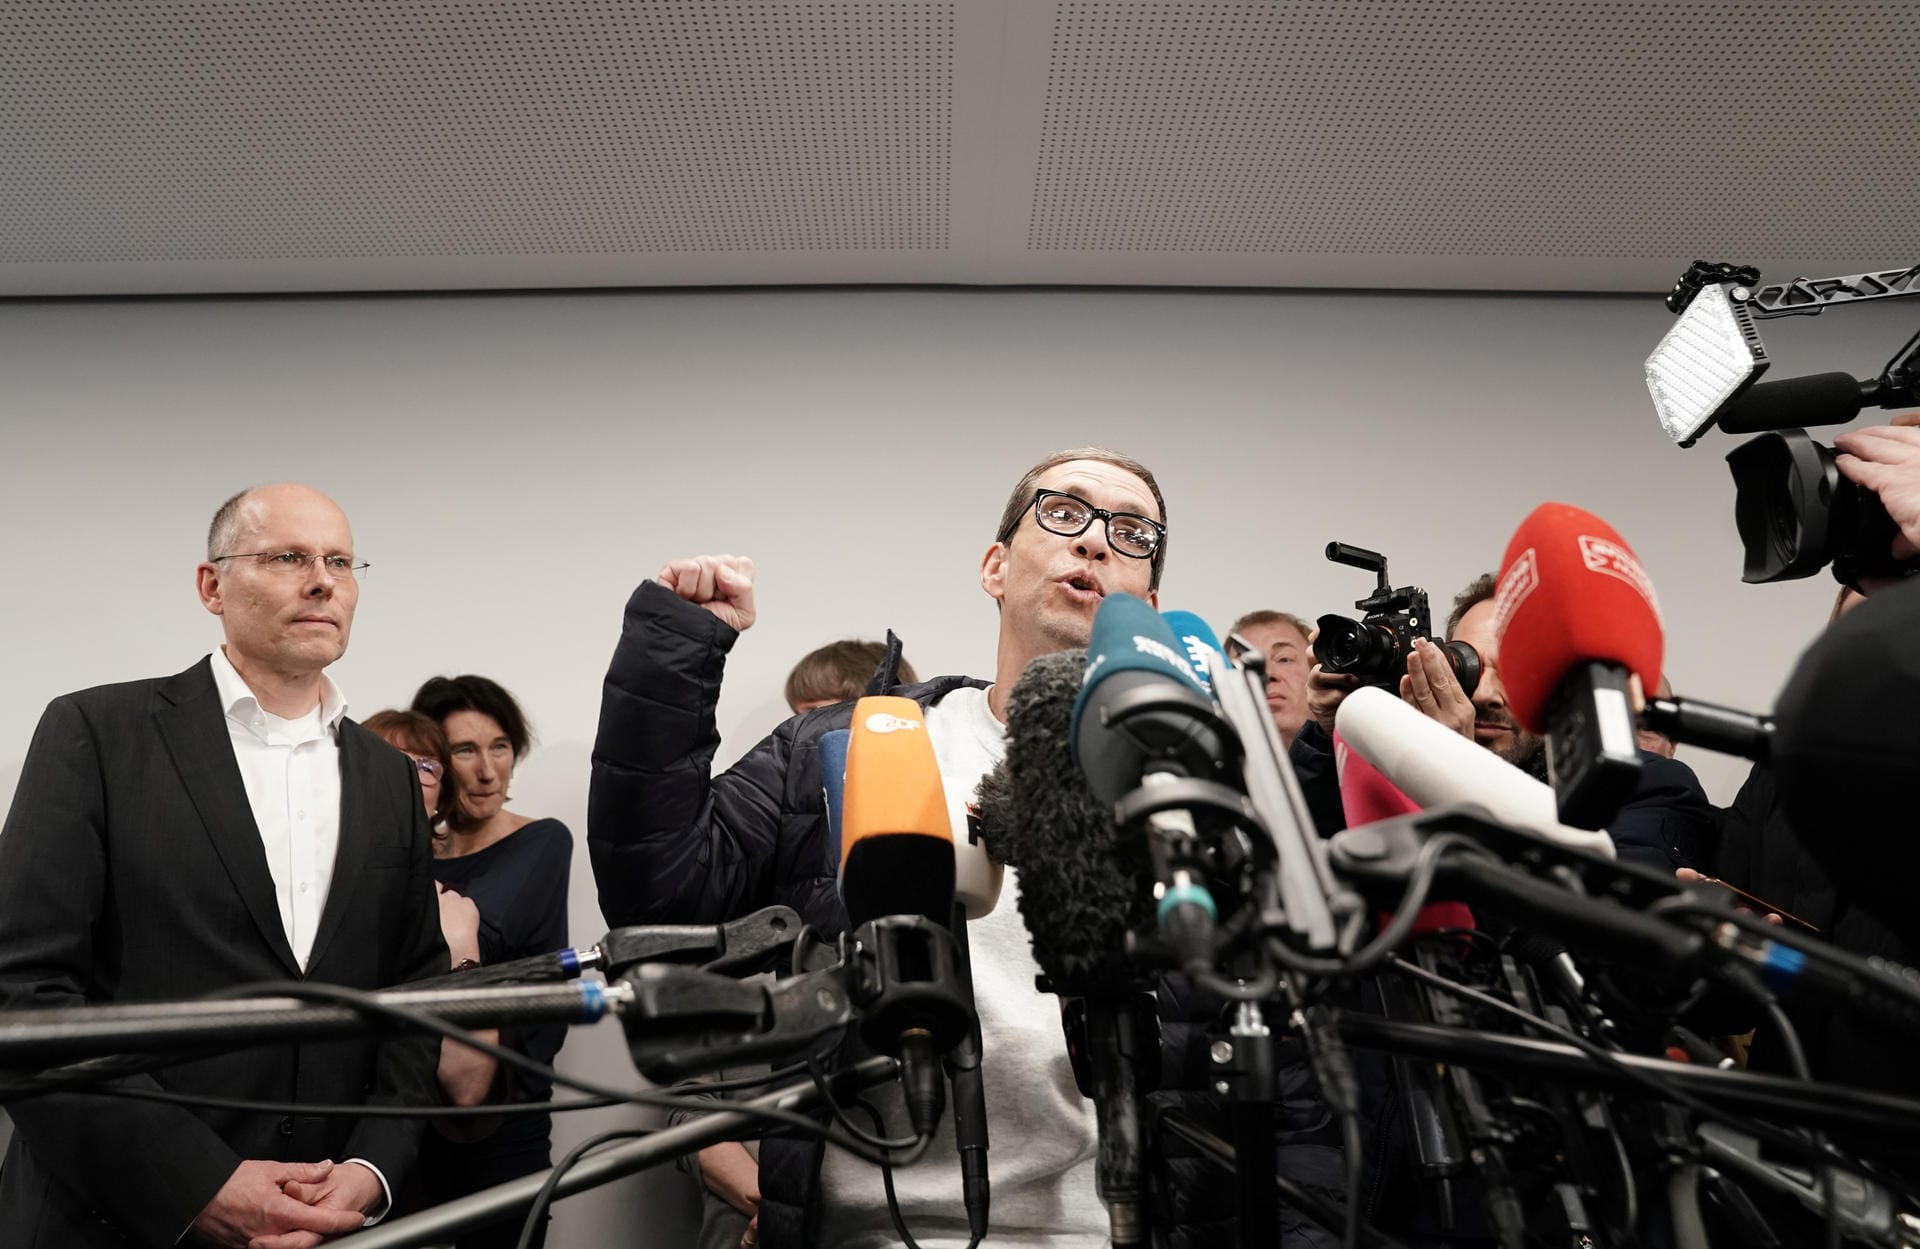 Vor den Journalisten sprach Söring über seine Gefühle nach der Freilassung: Er sei "froh und dankbar".